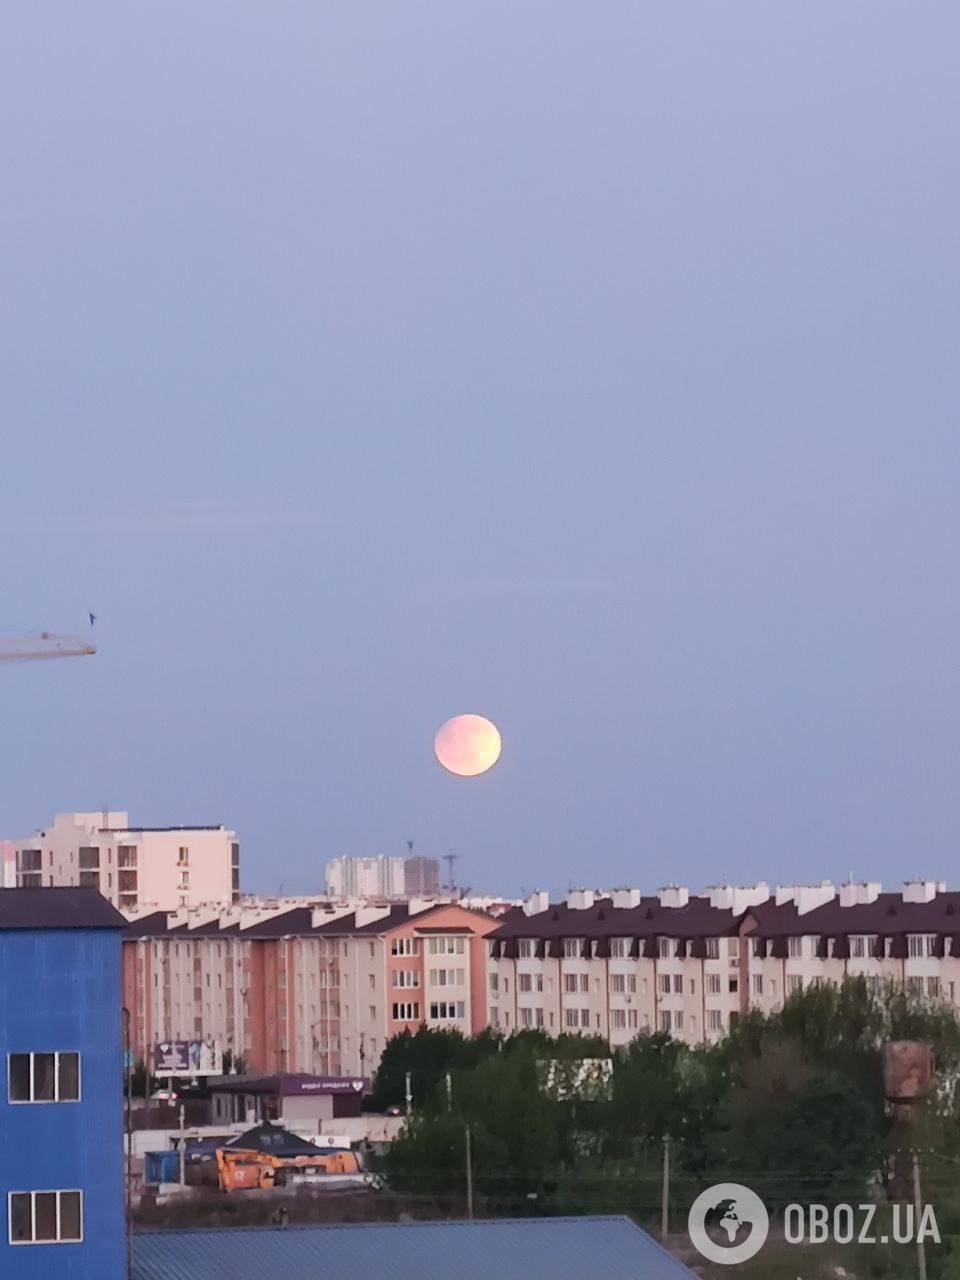 Лунное затмение: в Украине наблюдается редкое астрономическое явление. Фото